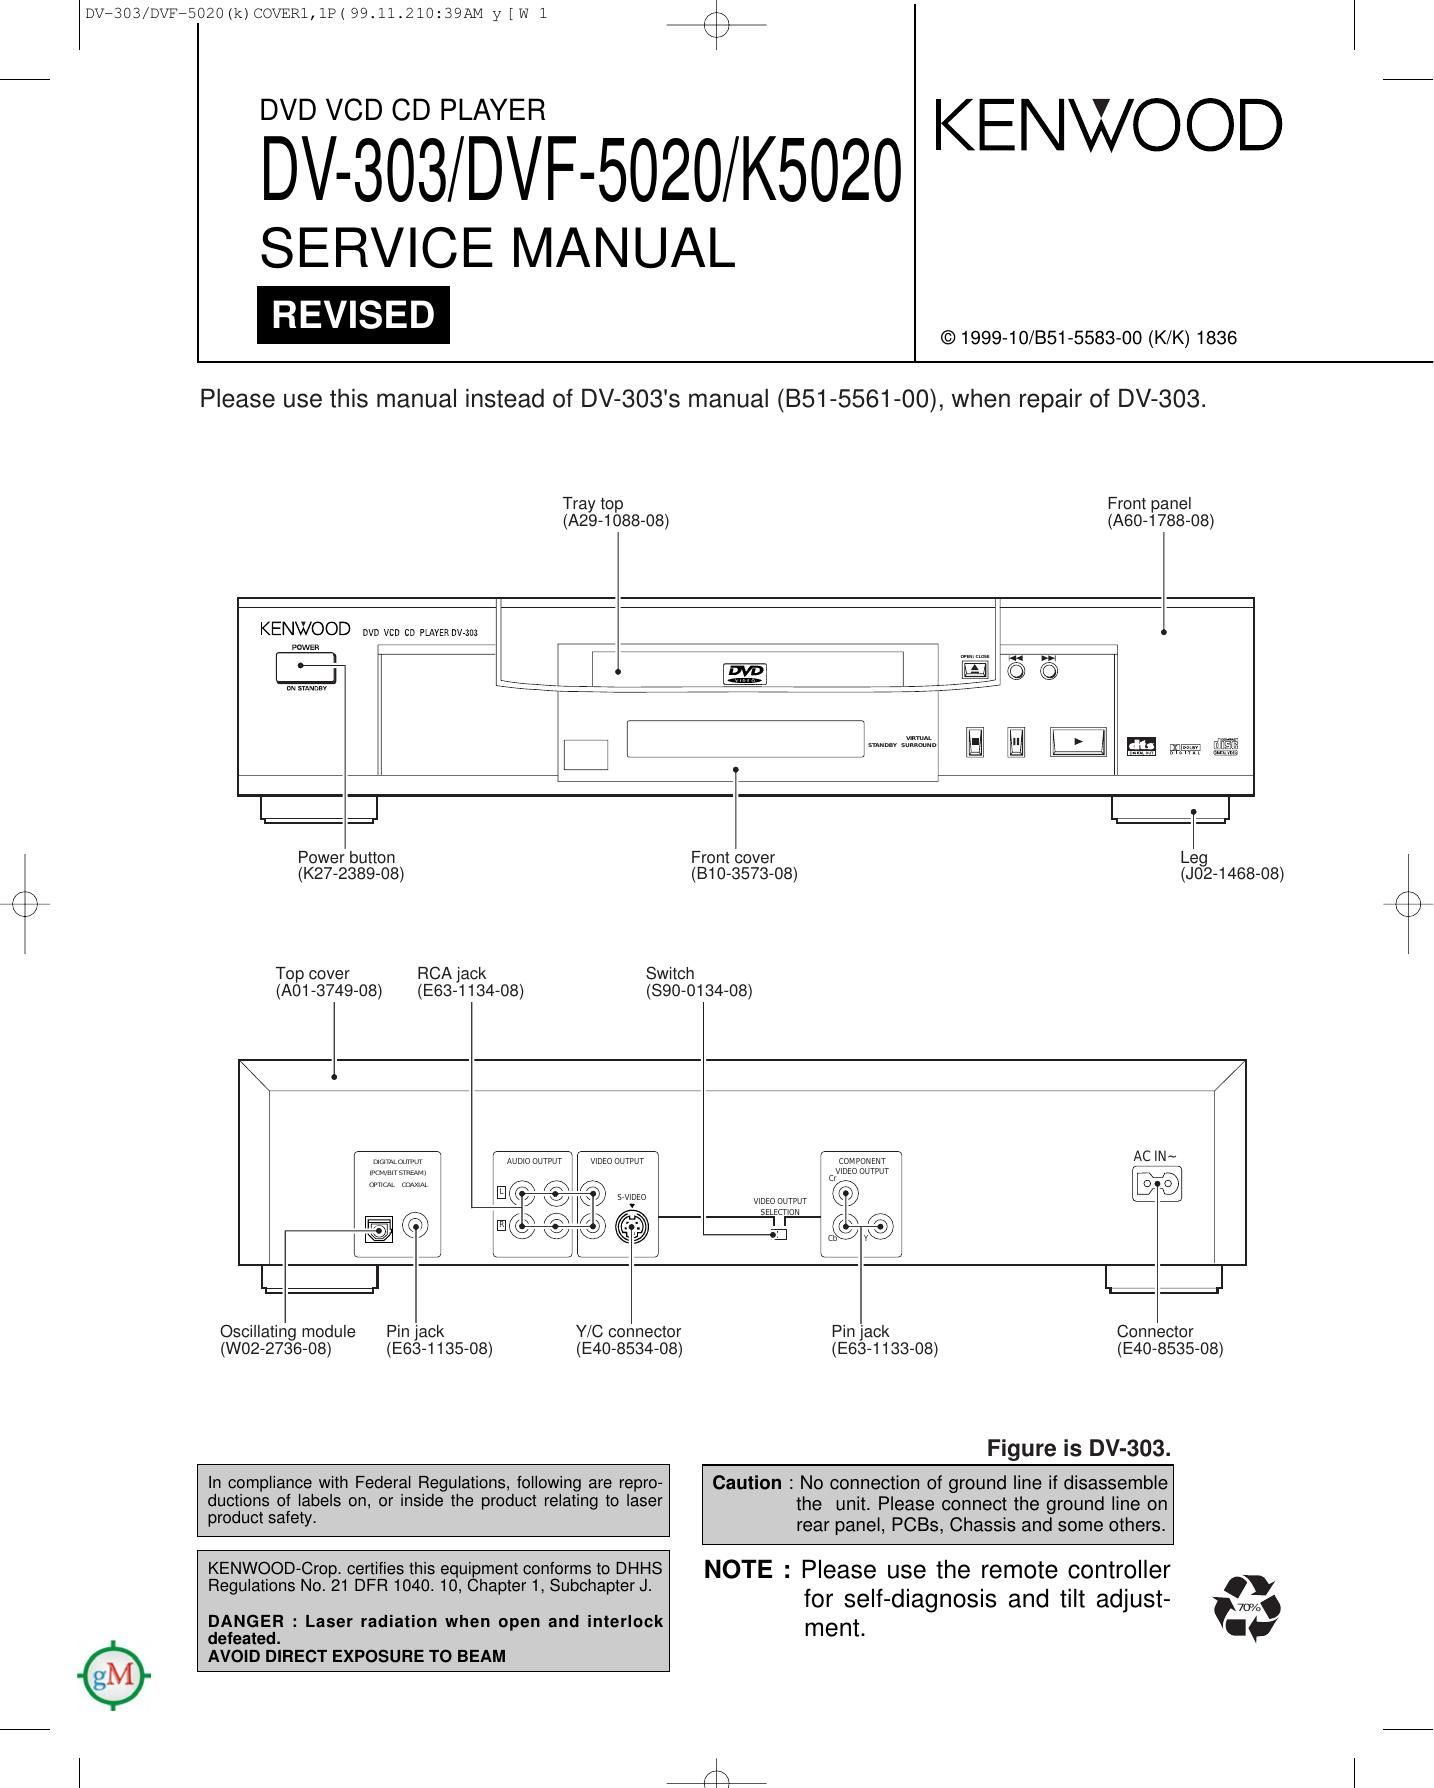 Kenwood DVF 5020 Service Manual